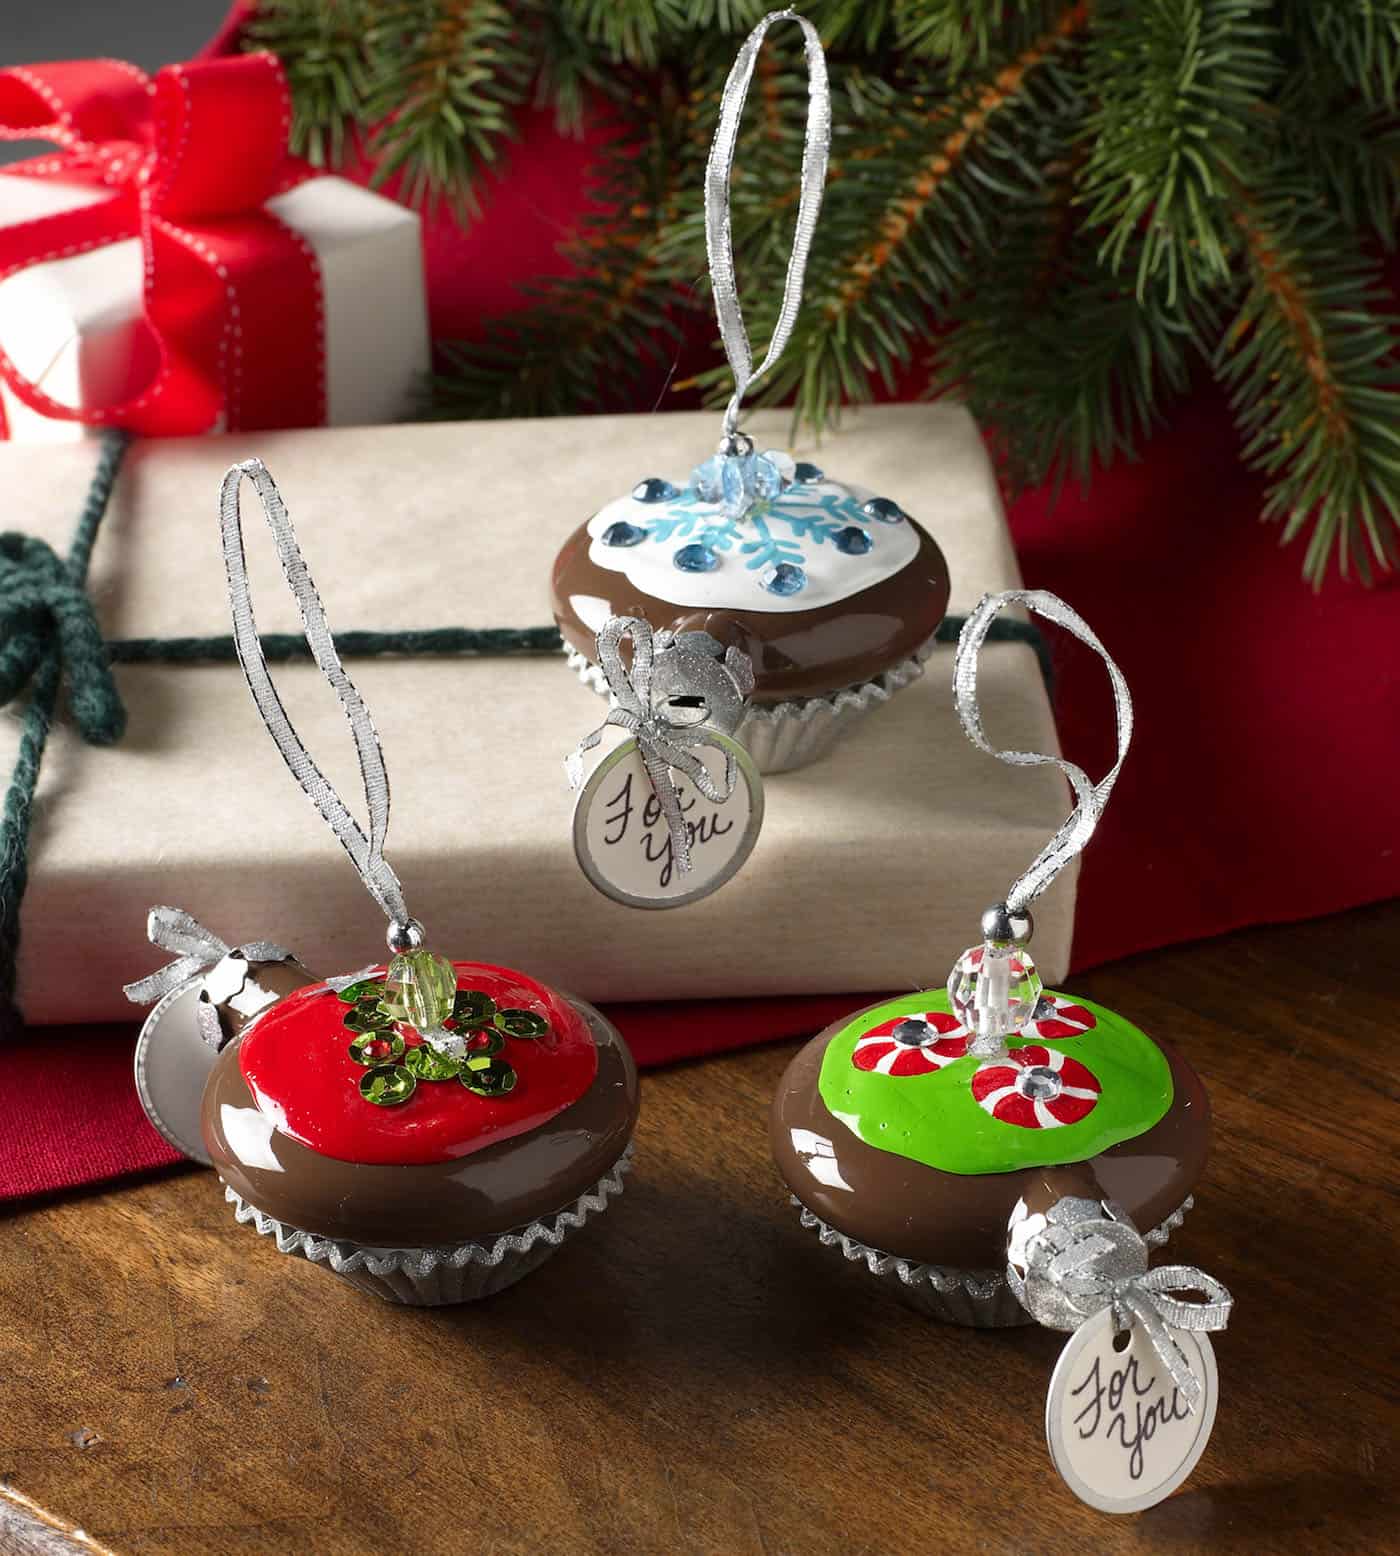 Cupcake Handmade Christmas Ornaments diycandy com